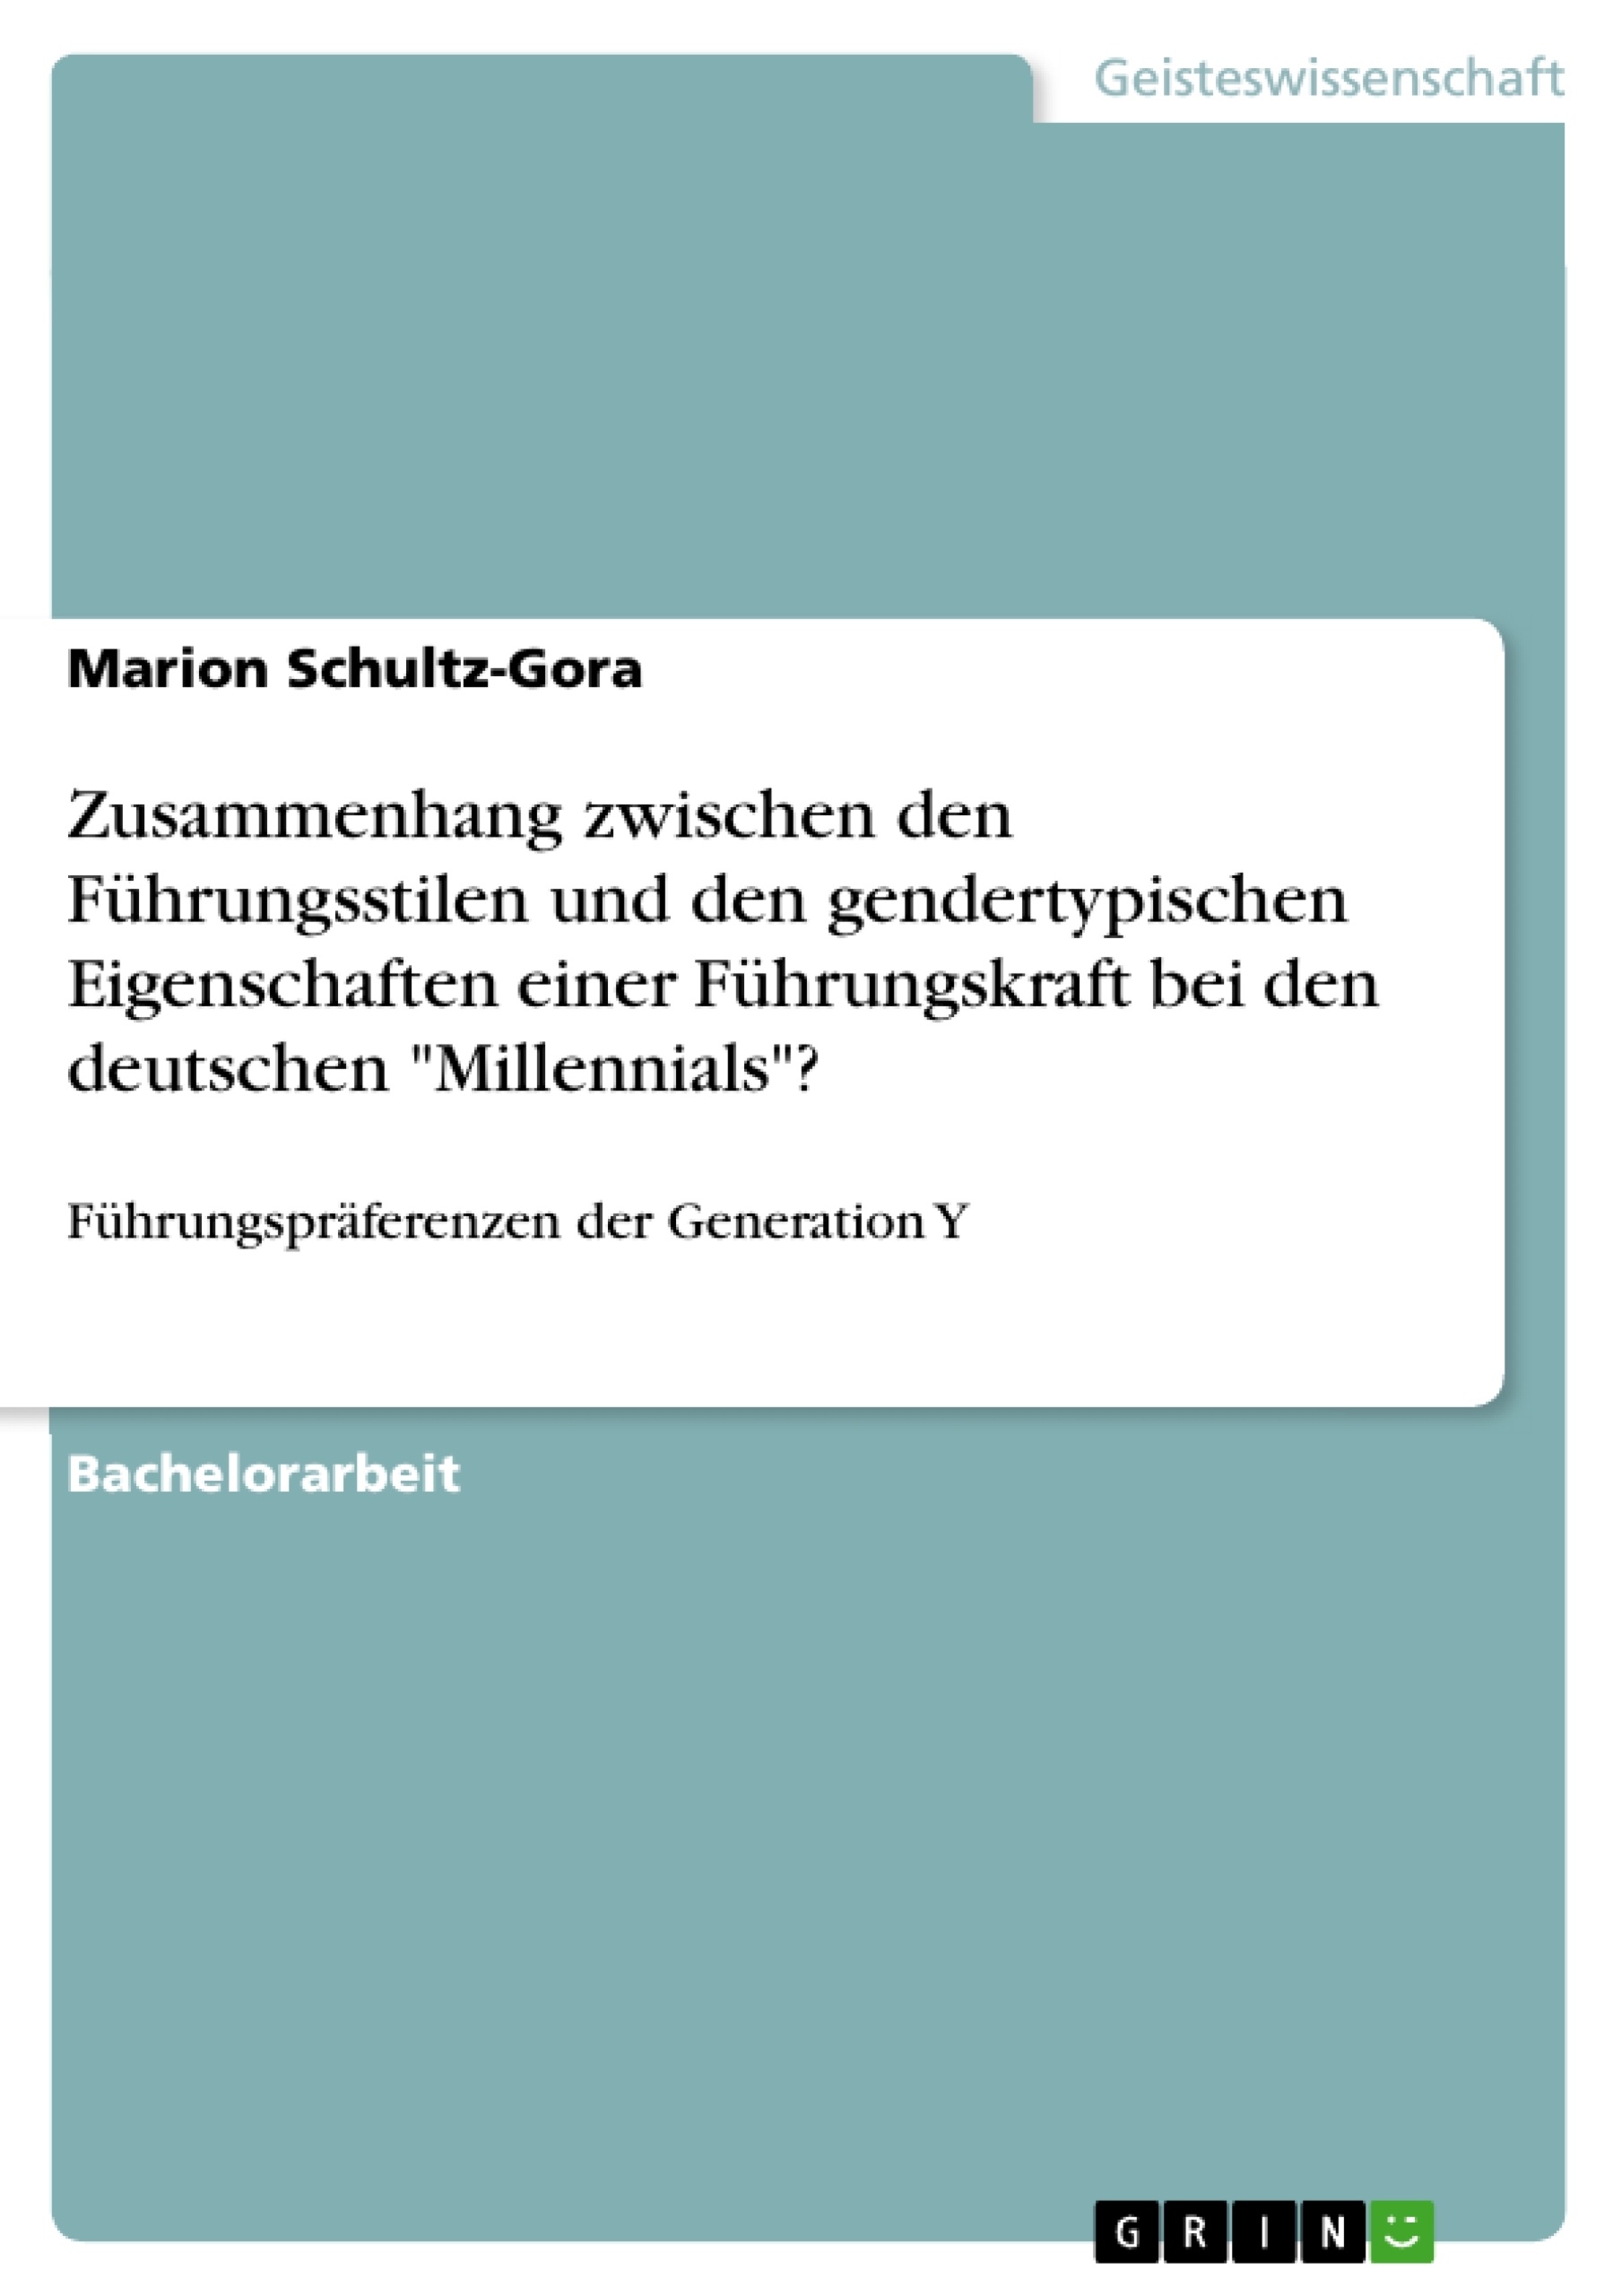 Titel: Zusammenhang zwischen den Führungsstilen und den gendertypischen Eigenschaften einer Führungskraft bei den deutschen "Millennials"?